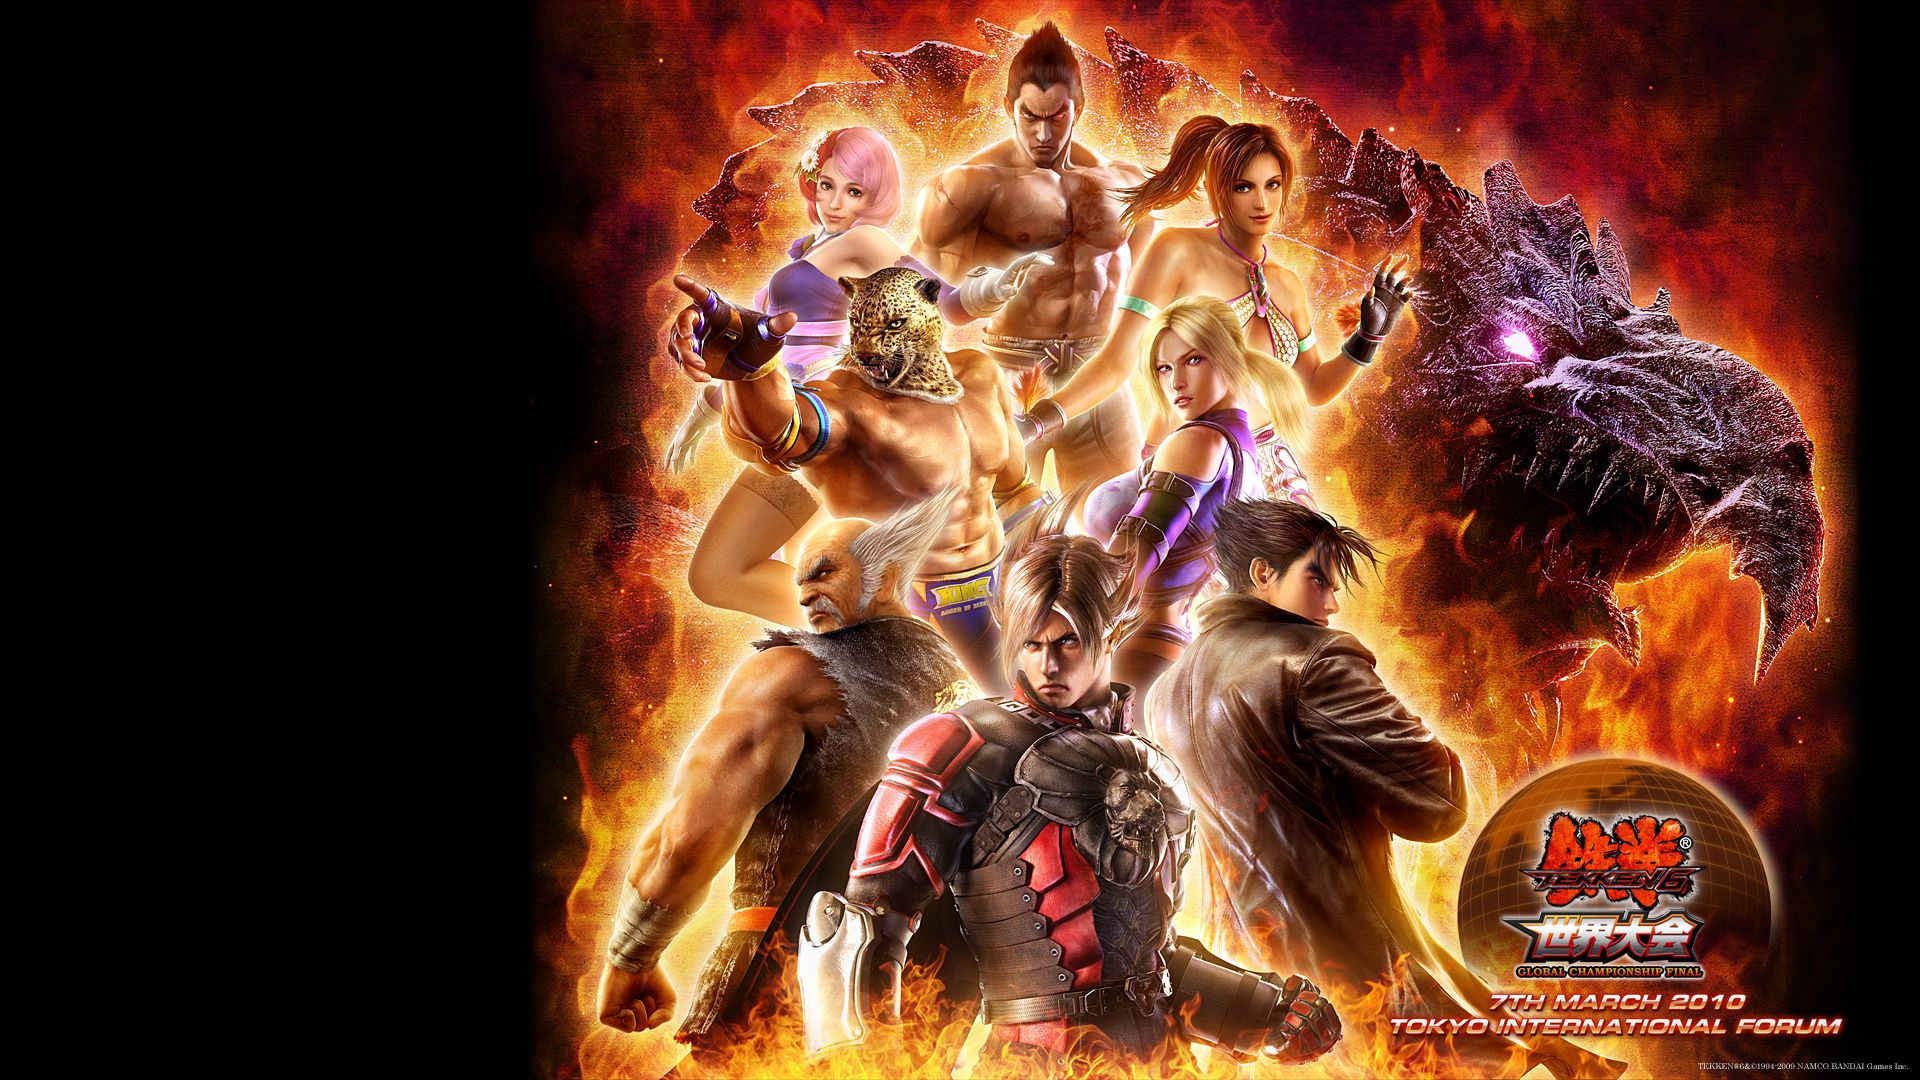 Top Tekken HQ Picture, Tekken WD 19 Wallpaper